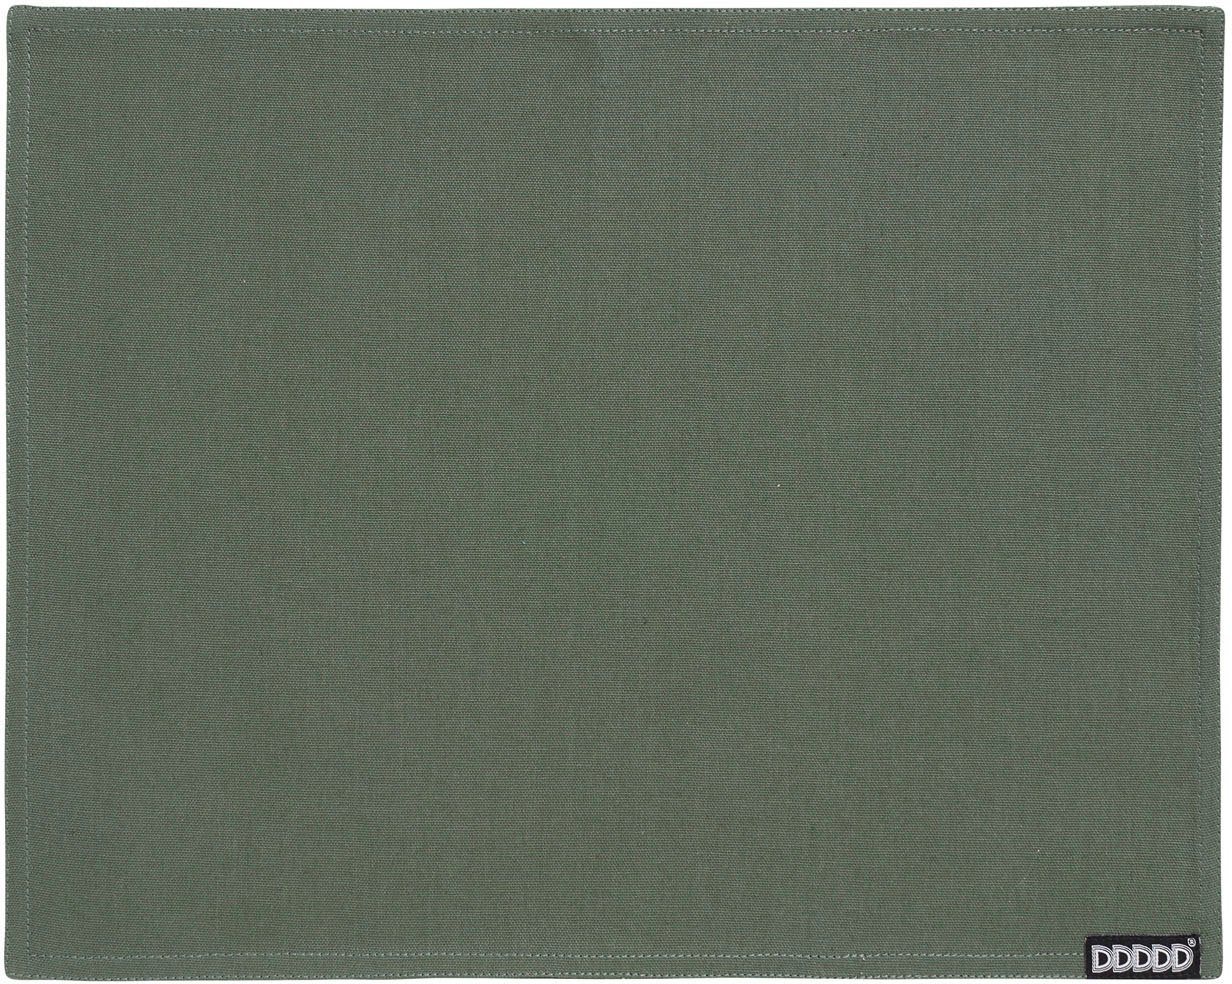 Platzset, Kit, DDDDD, (Set, 2-St), Platzdecke, 35x45 cm, Baumwolle von DDDDD